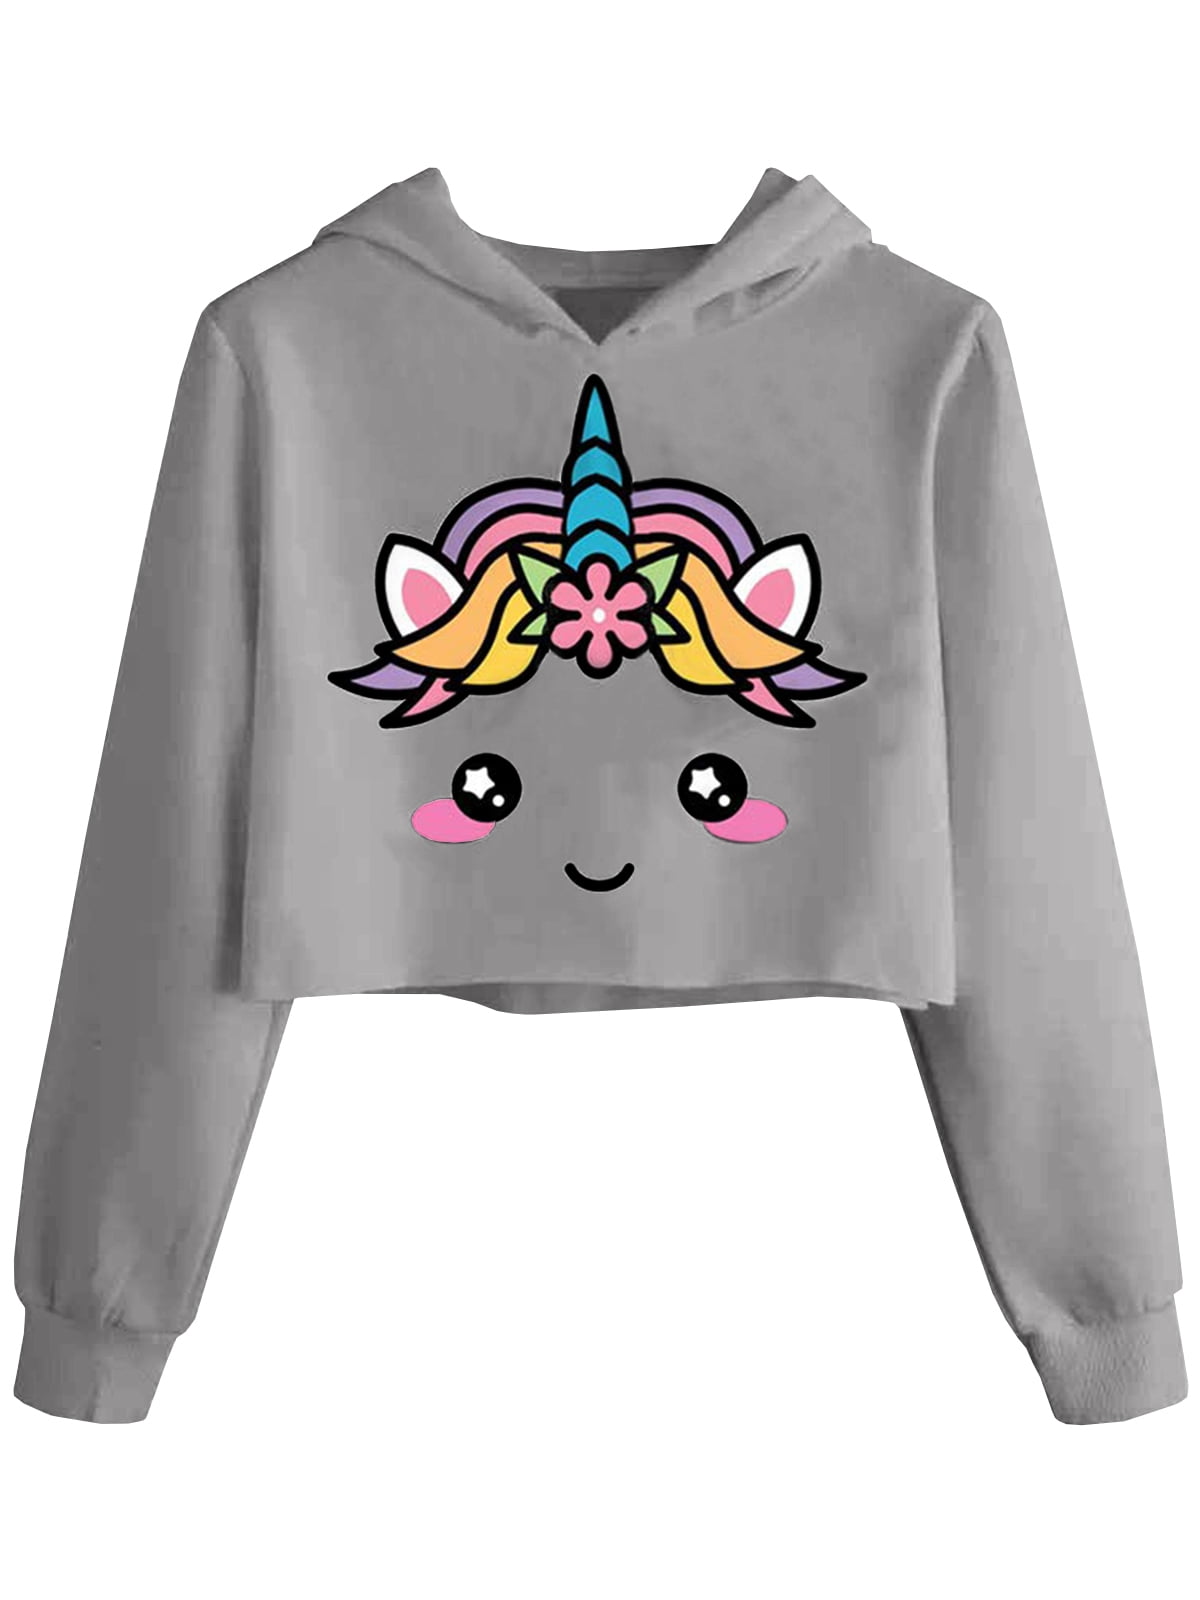 Girls Unicorn Crop Tops Kids Cute Hoodies Long Sleeves Pullover Sweatshirts 